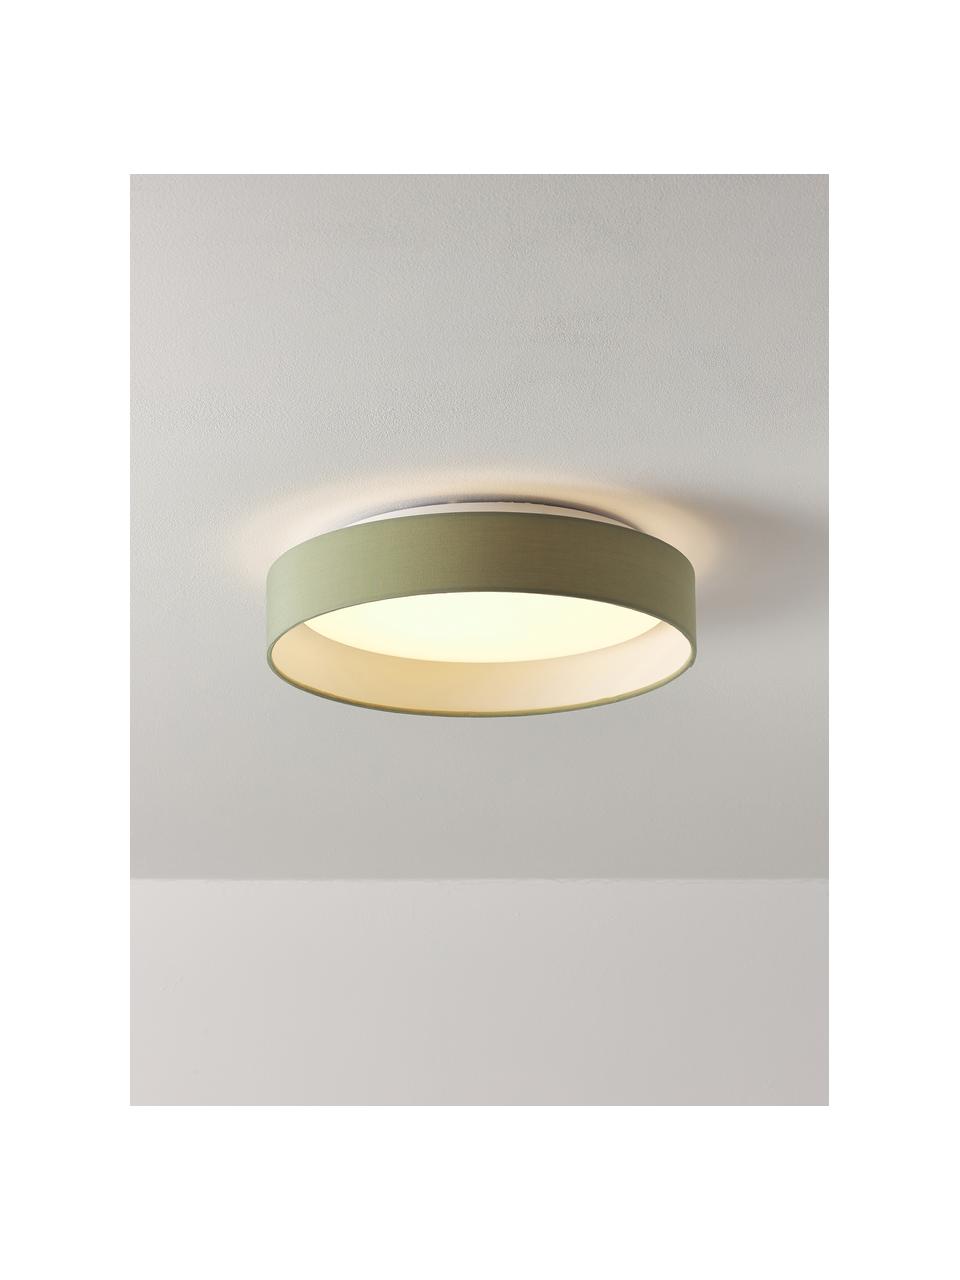 Lampa sufitowa LED Helen, Oliwkowy zielony, ∅ 52 x W 11 cm